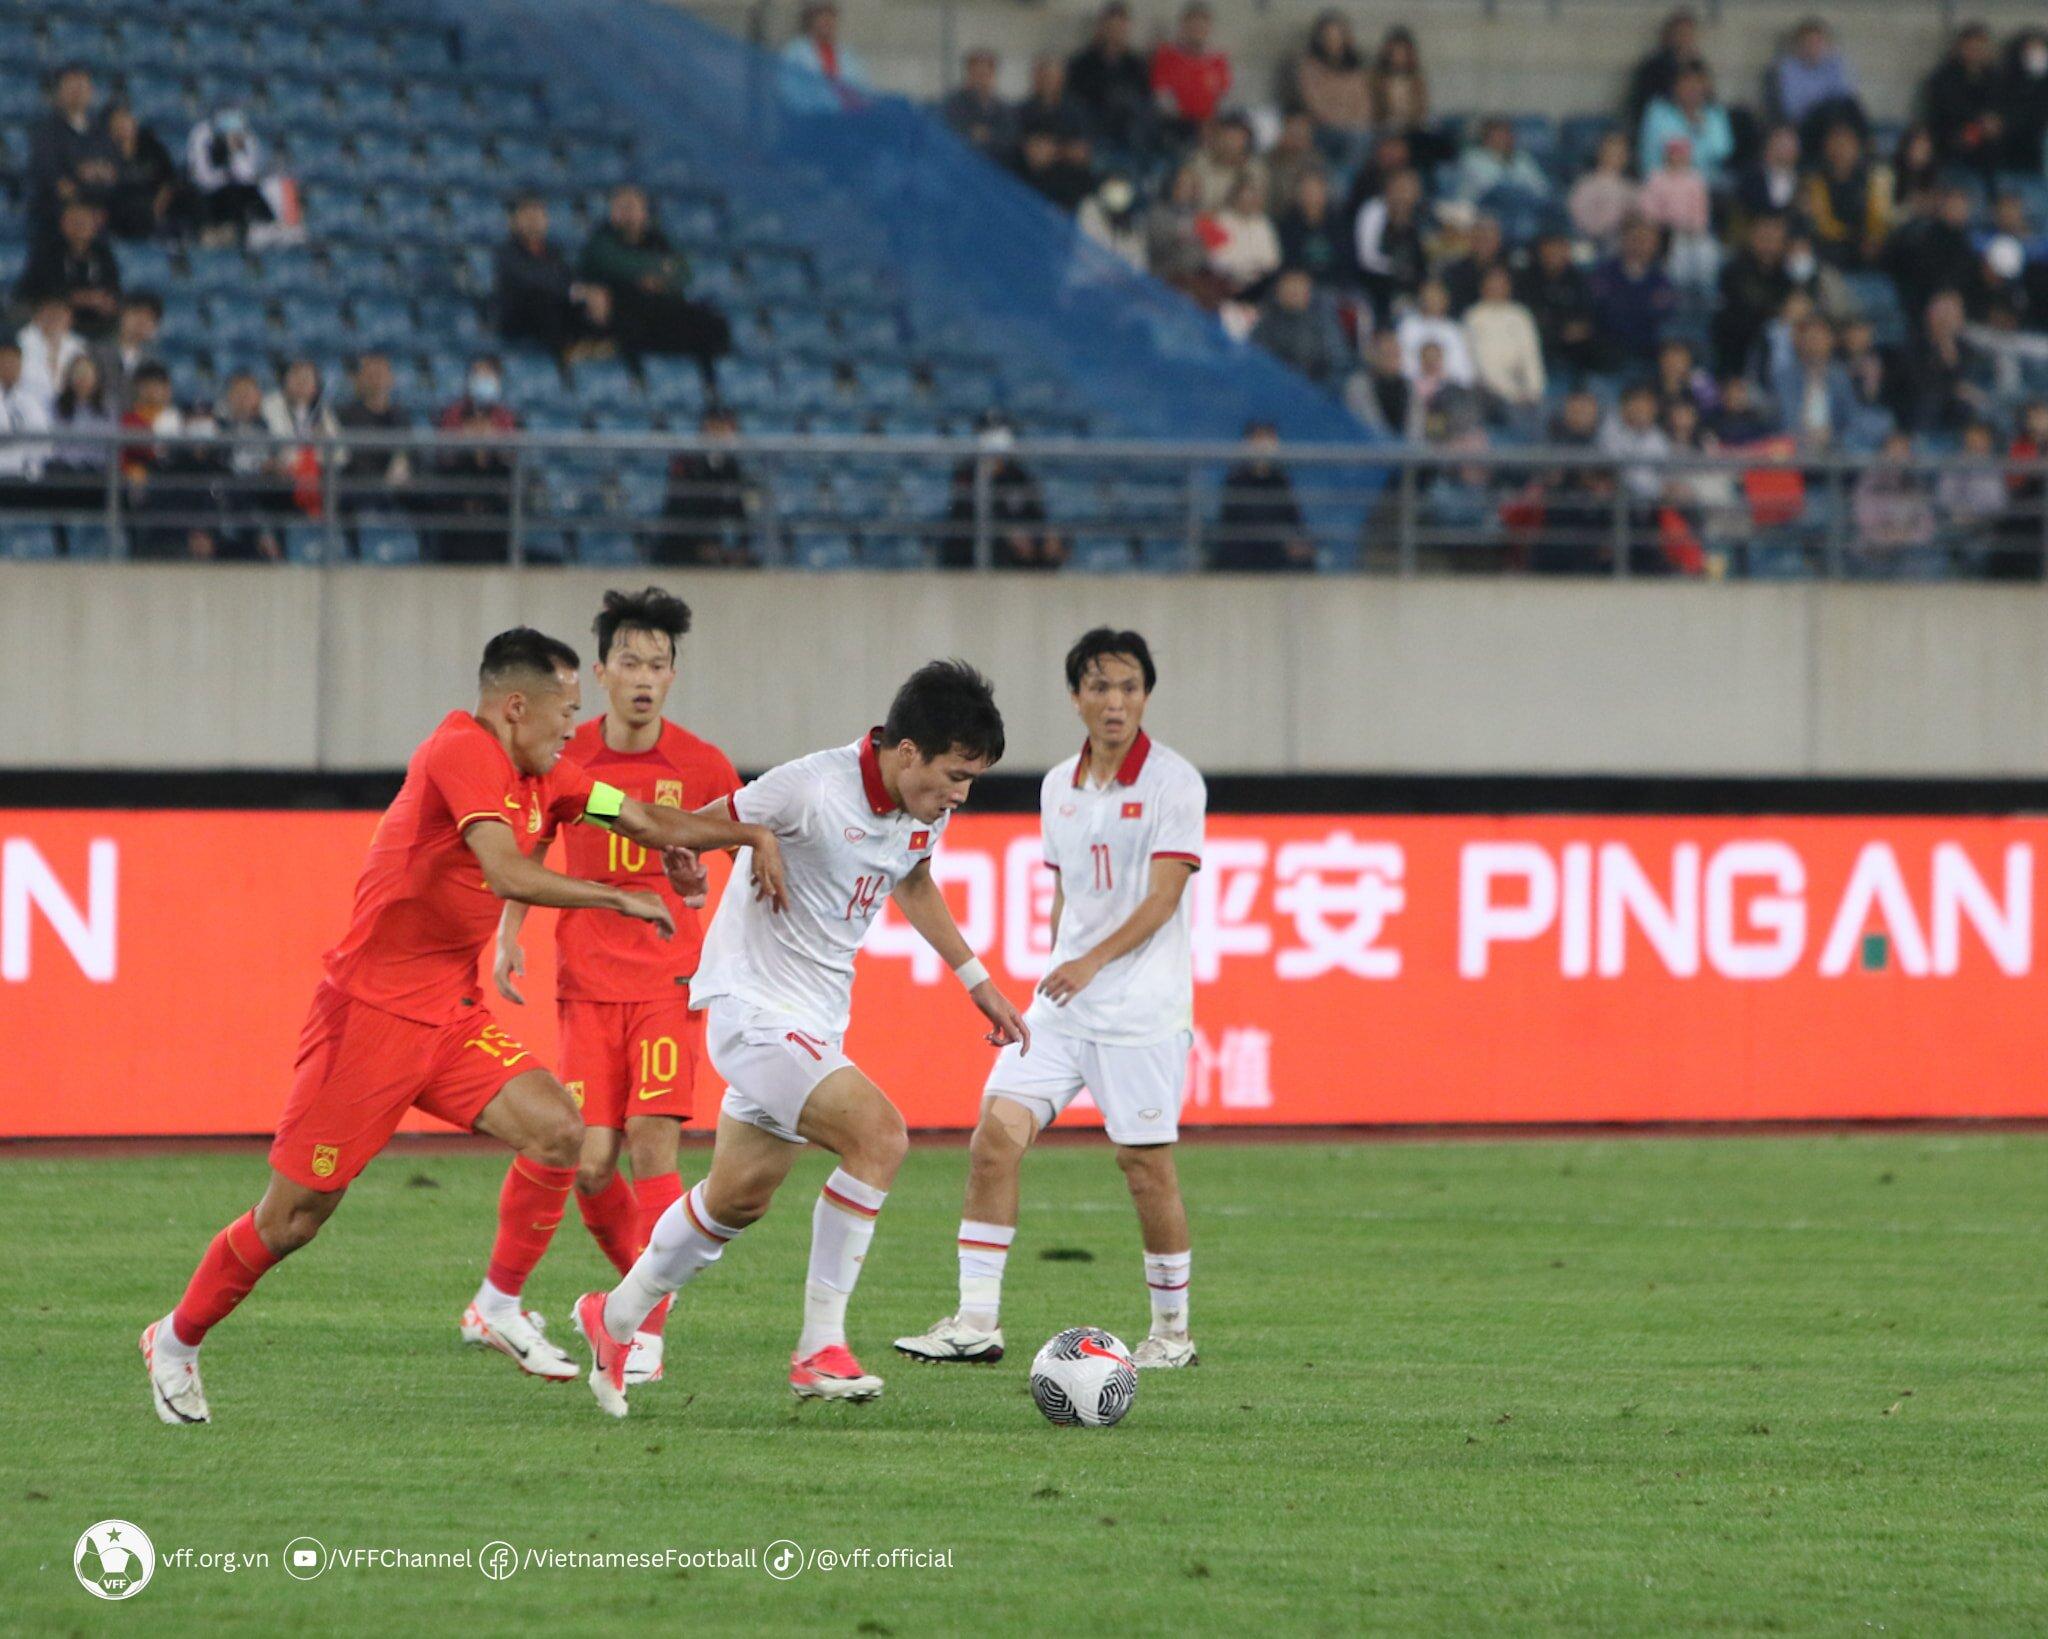 Đội tuyển Việt Nam nhận thất bại trước đội chủ nhà Trung Quốc tại Đại Liên (Ảnh: Internet)